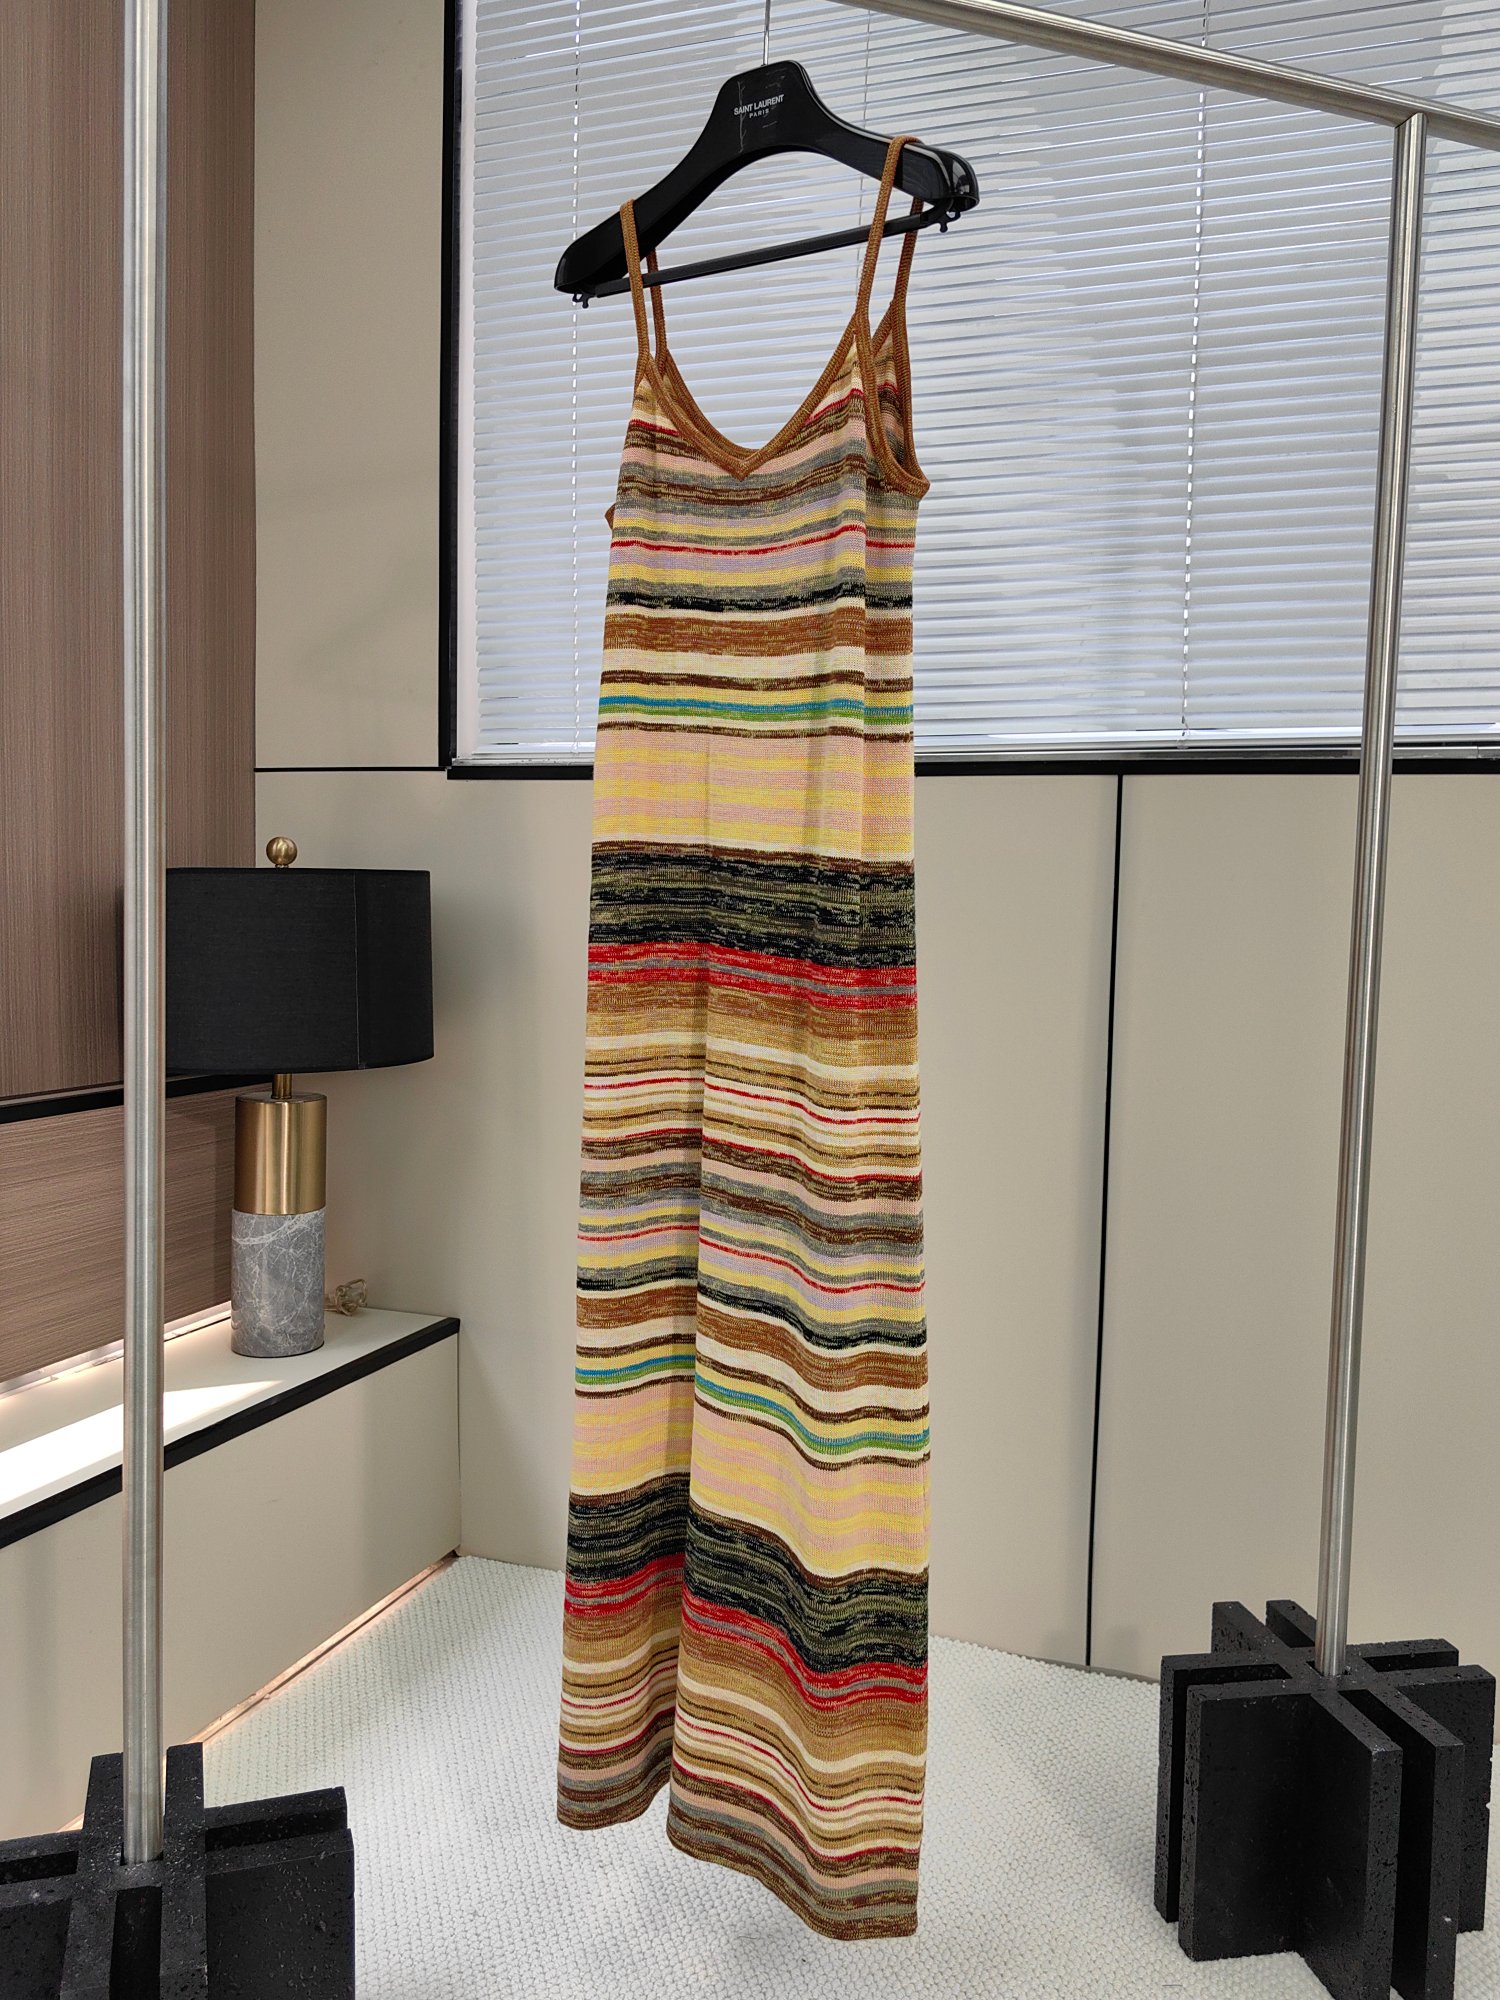 码数s-m-l今天给大家分享一款超适合度假的彩色条纹吊带连衣裙让你秒变时尚icon!这款连衣裙的设计超活